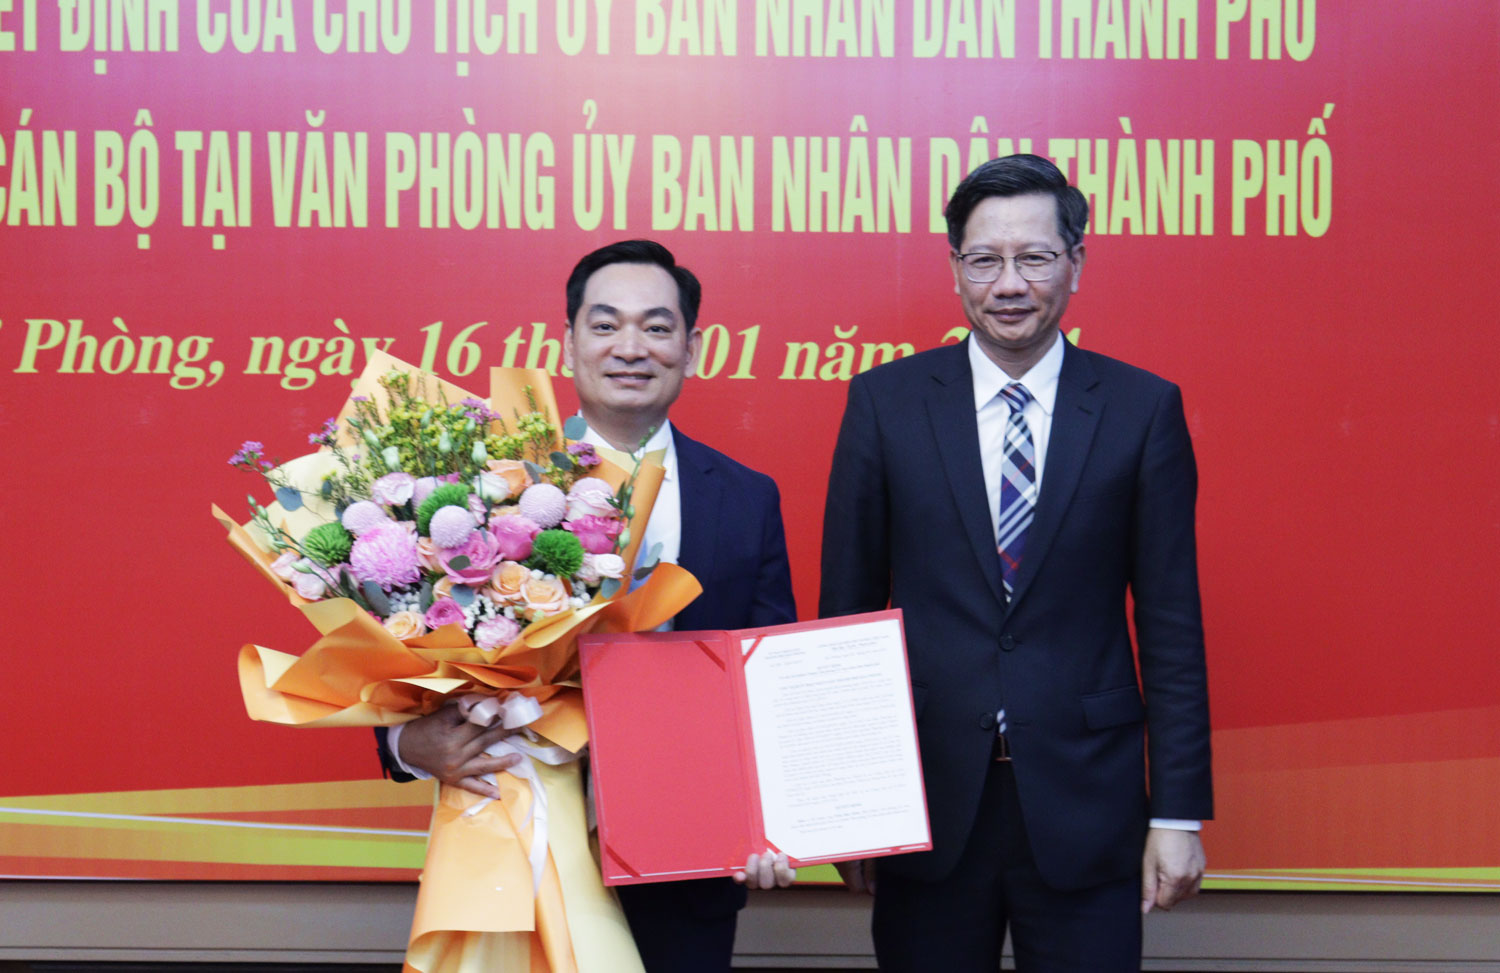 Ông Lê Anh Quân, Phó chủ tịch Thường trực UBND TP. Hải Phòng trao Quyết định cho ông Trần Huy Kiên, tân Chánh Văn phòng UBND Thành phố.